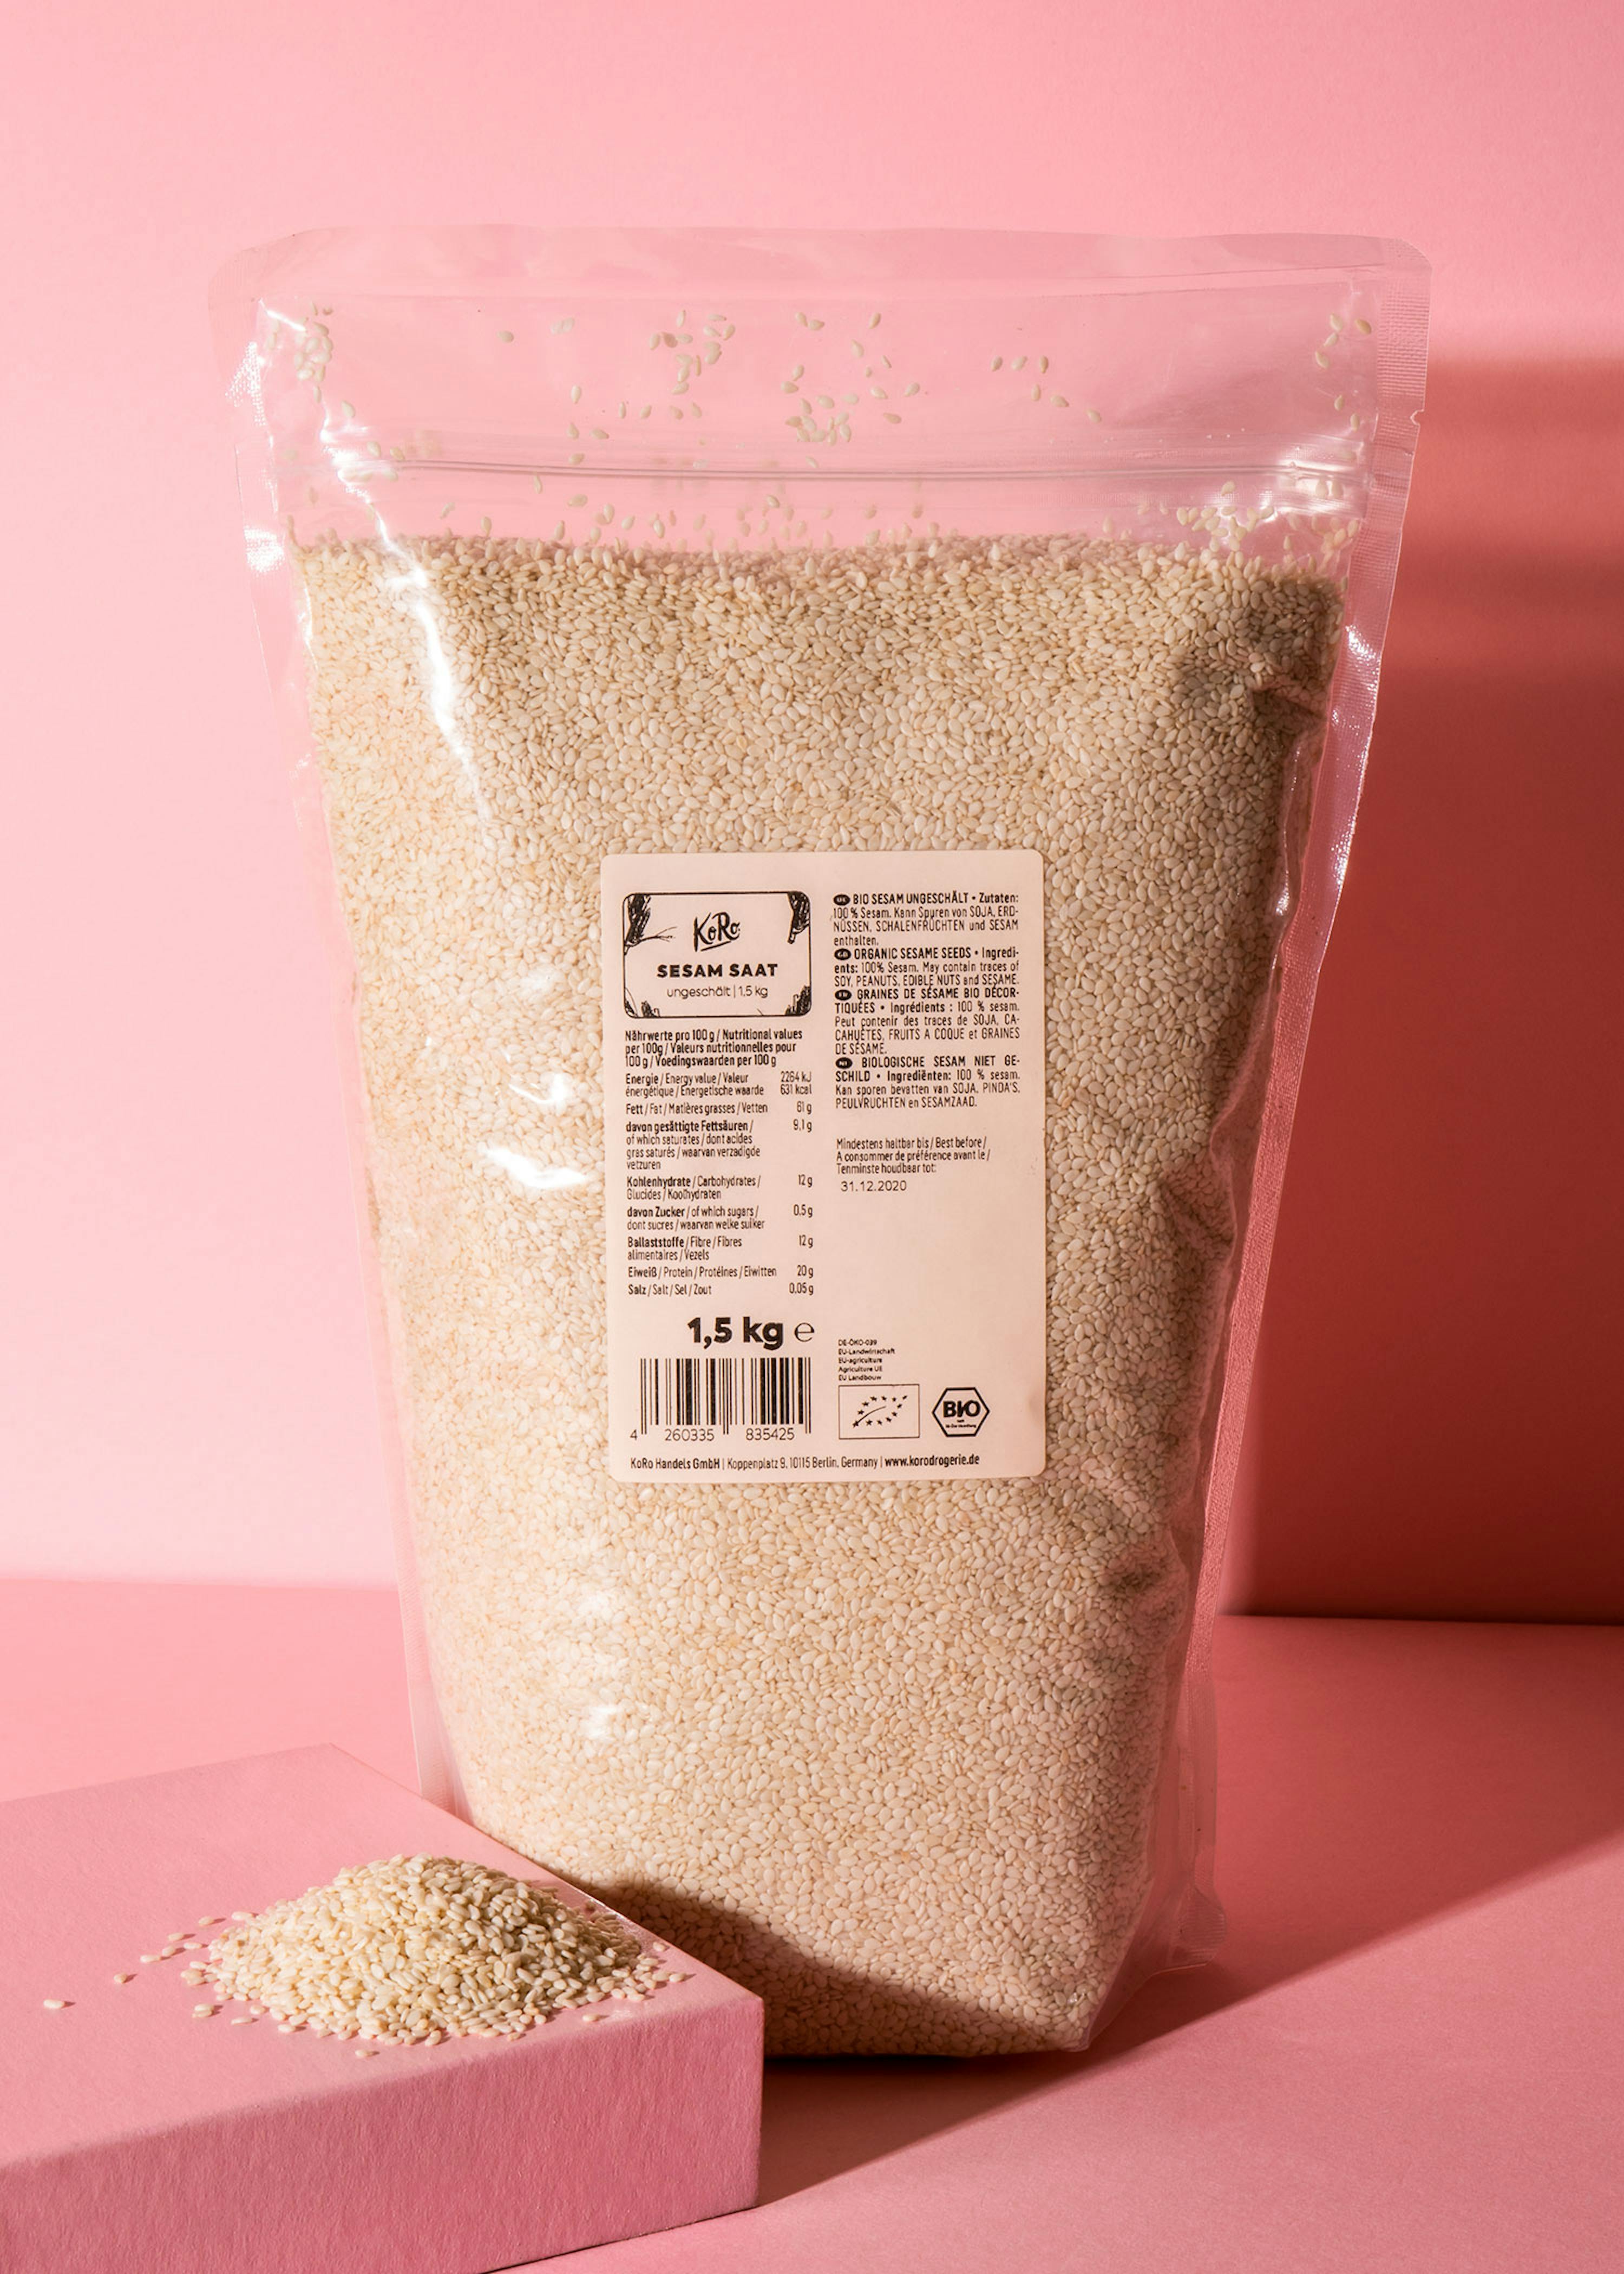 Graines de sésame non décortiquées bio 1,5 kg